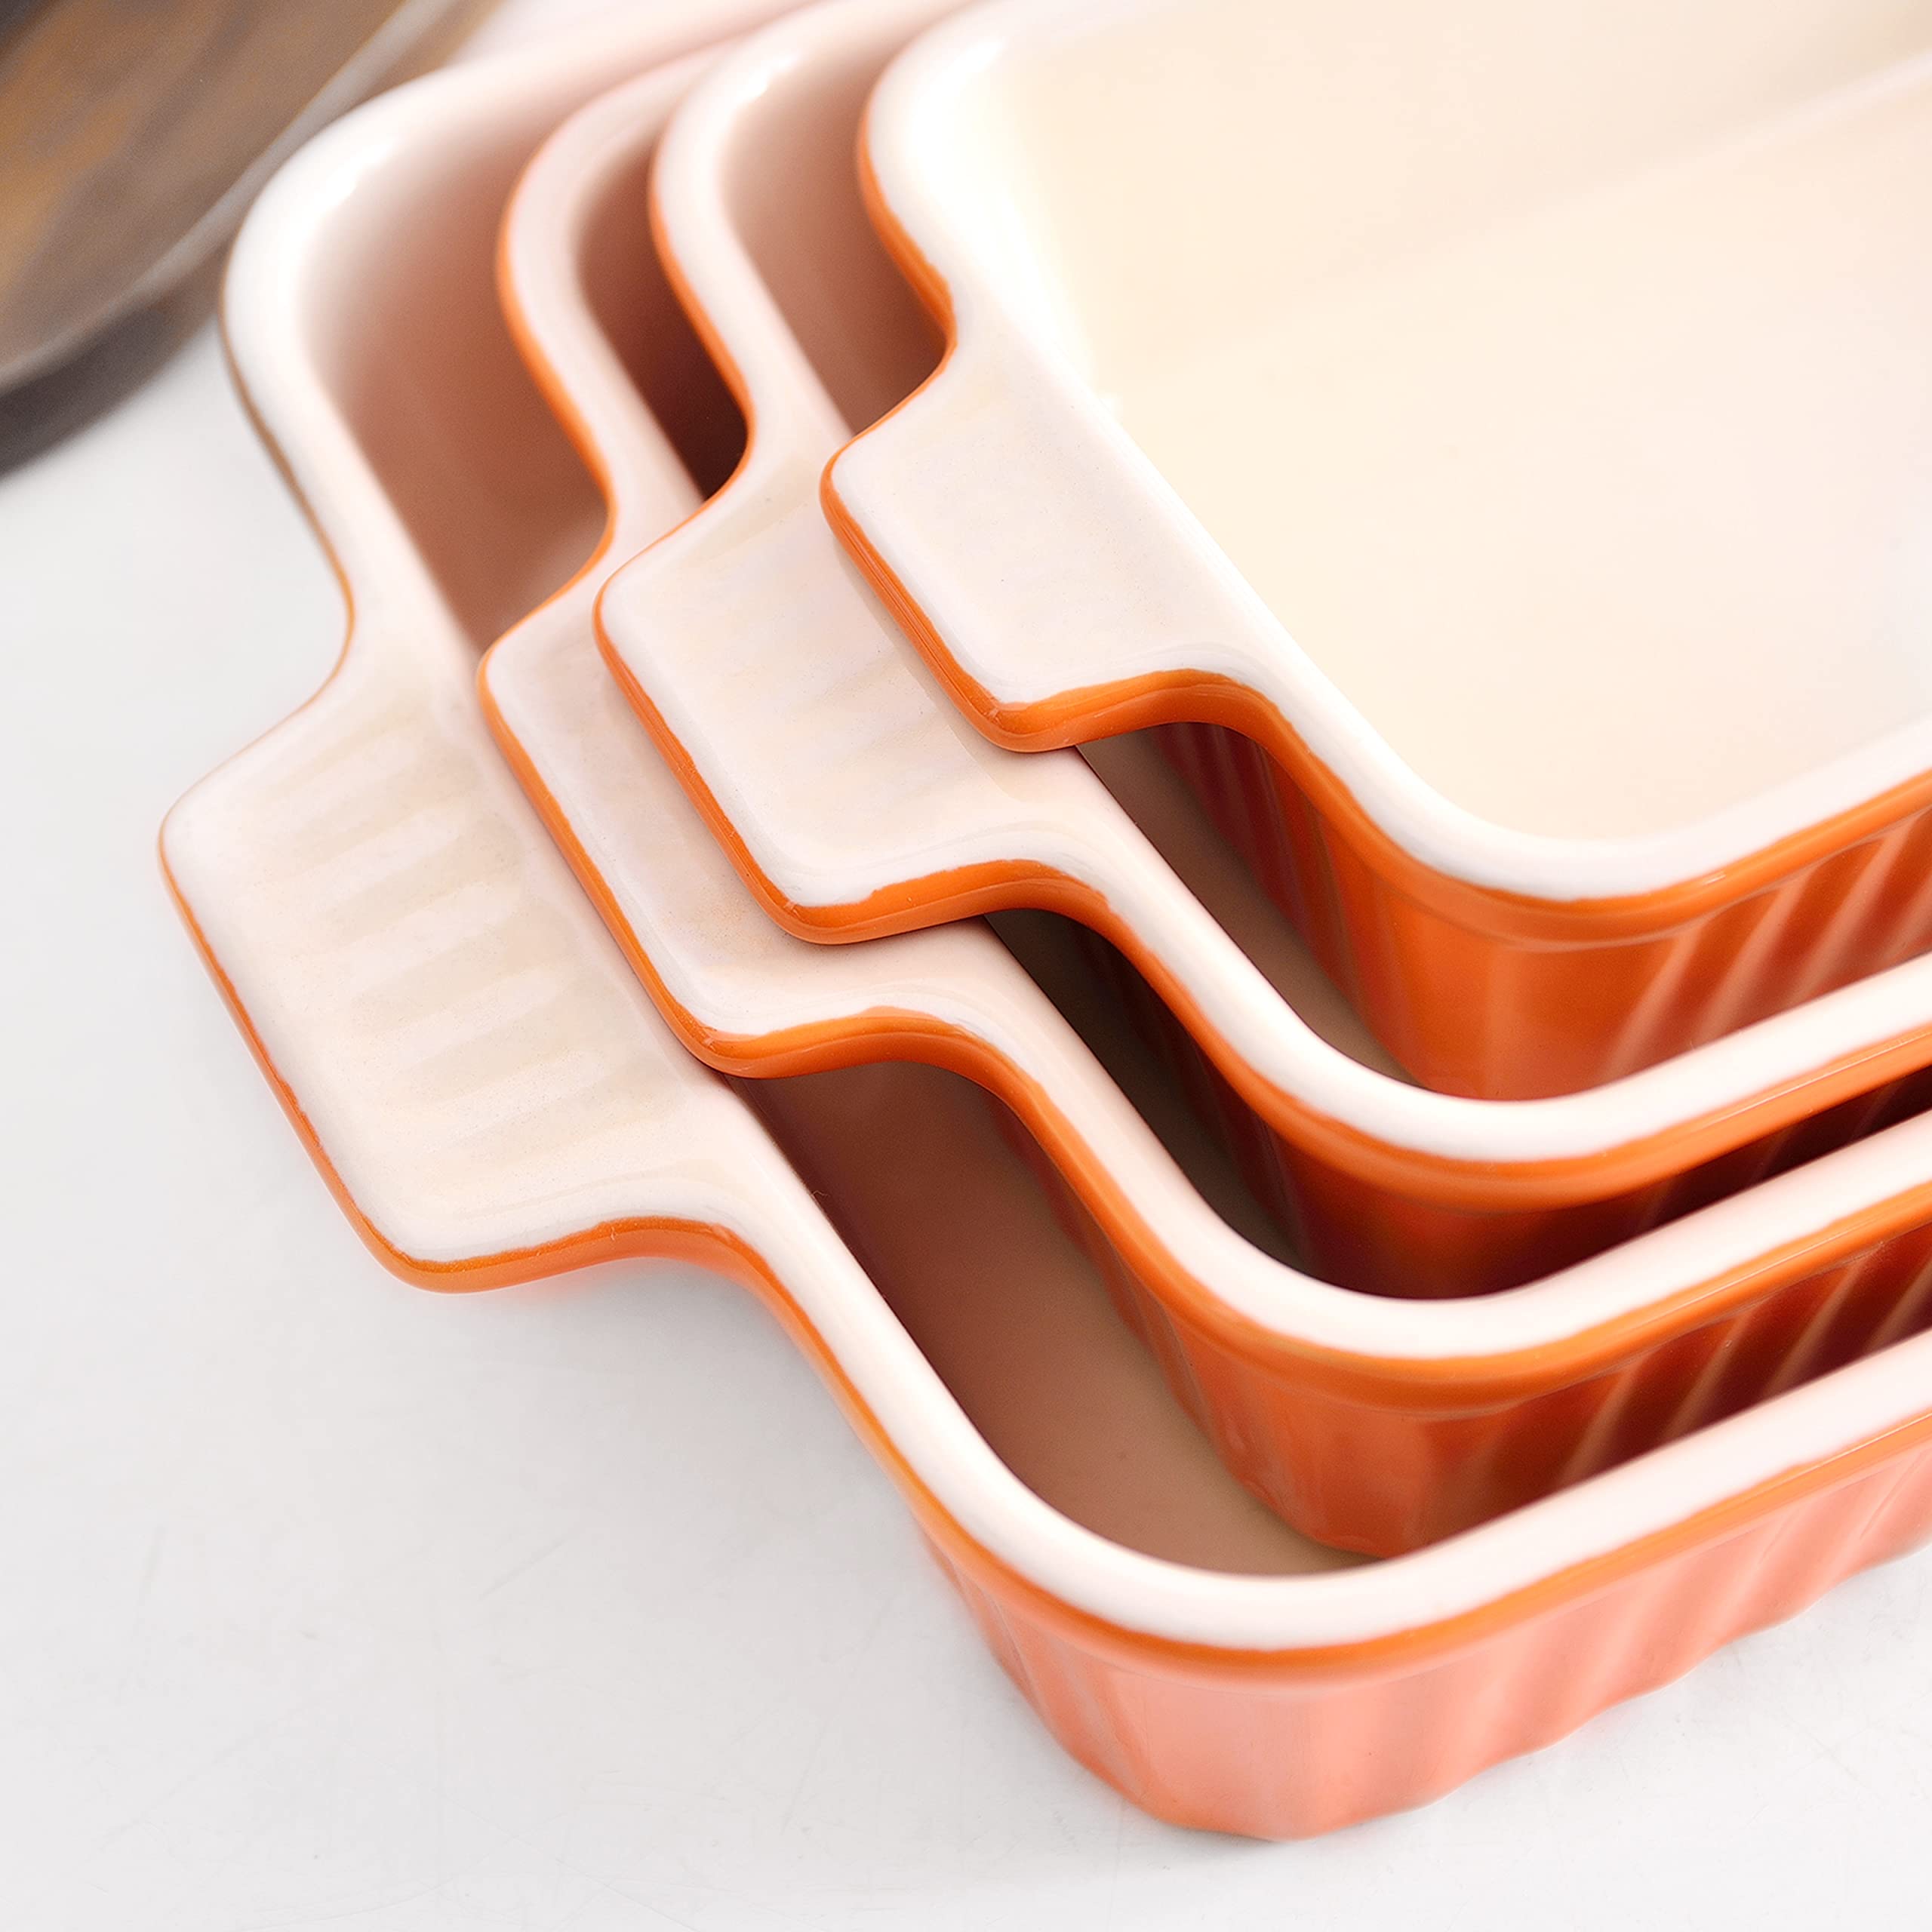 MALACASA Bakeware Set of 4, Porcelain Baking Pans Set for Oven, Casserole Dish, Ceramic Rectangular Baking Dish Lasagna Pans for Cooking Cake Kitchen, Orange(9.4